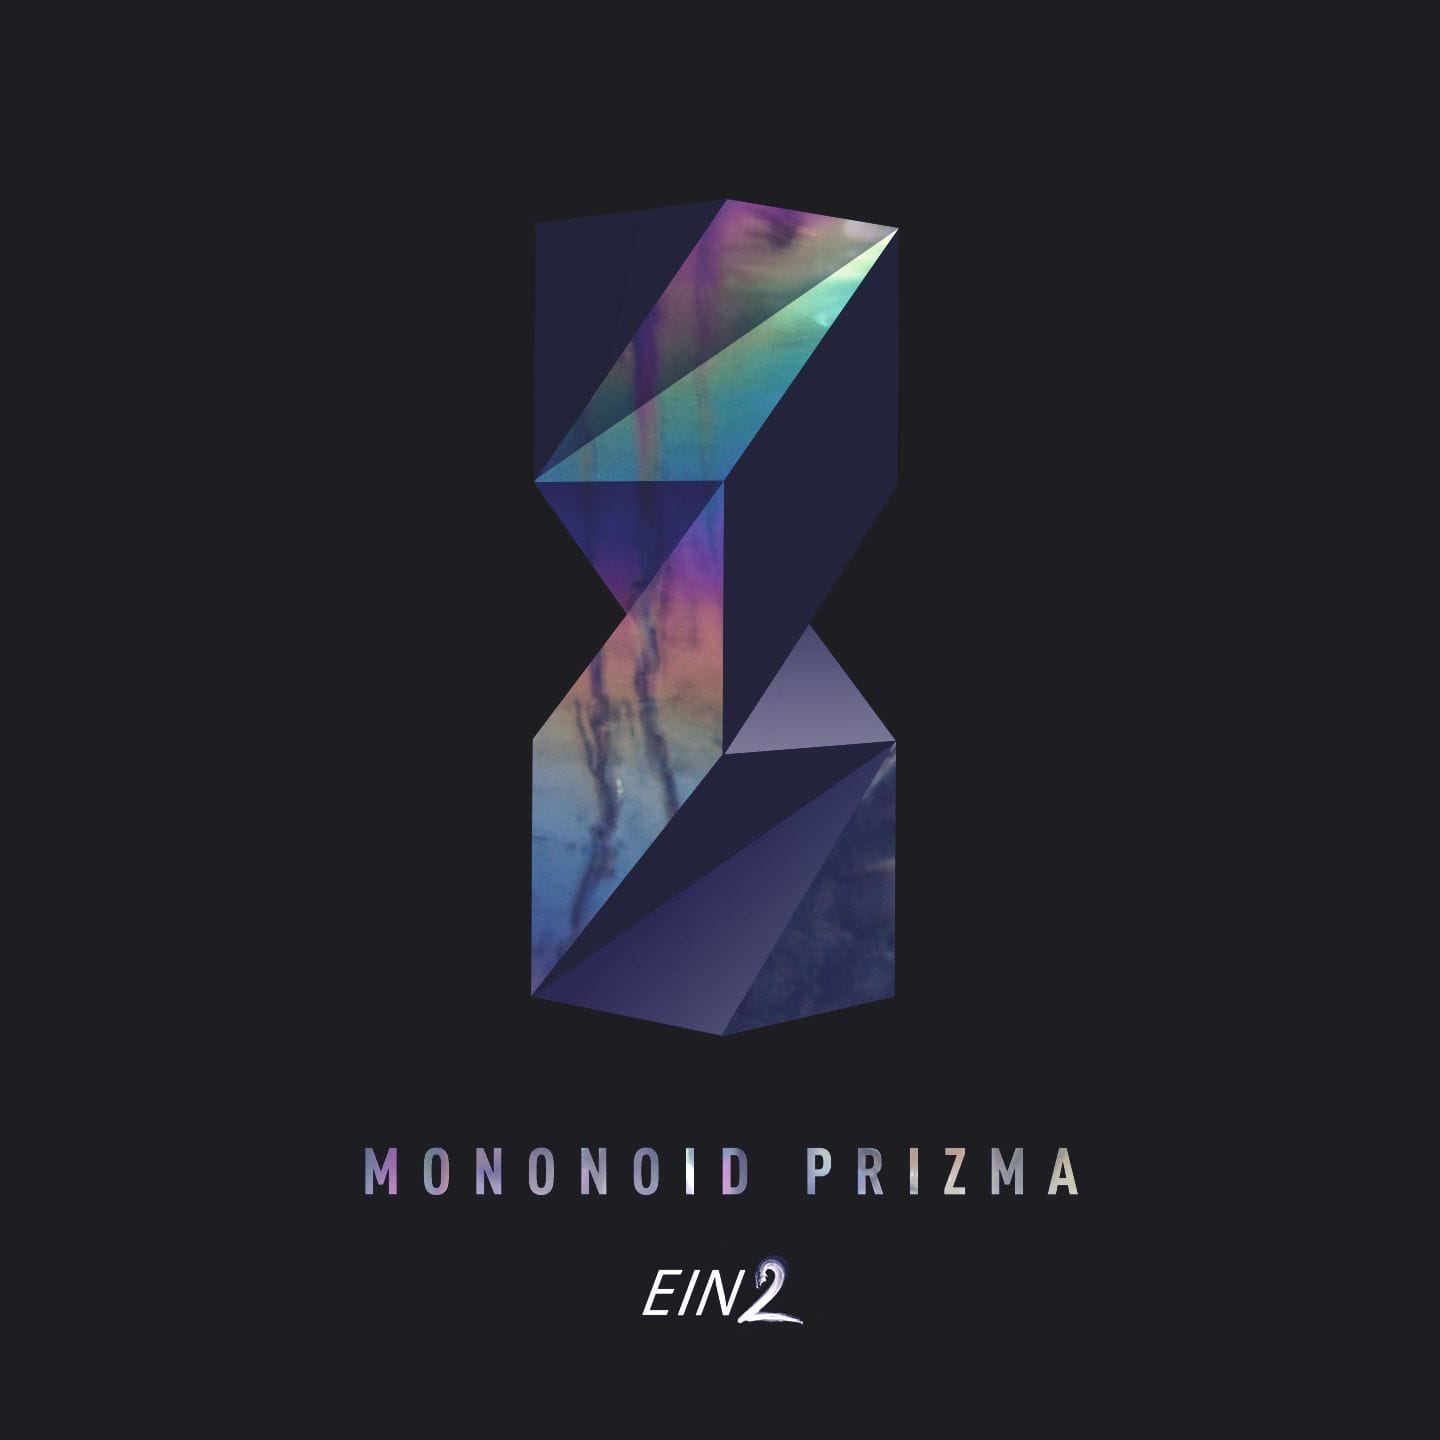 Mononoid signe son nouvel EP "Prizma" chez Einmusika 8